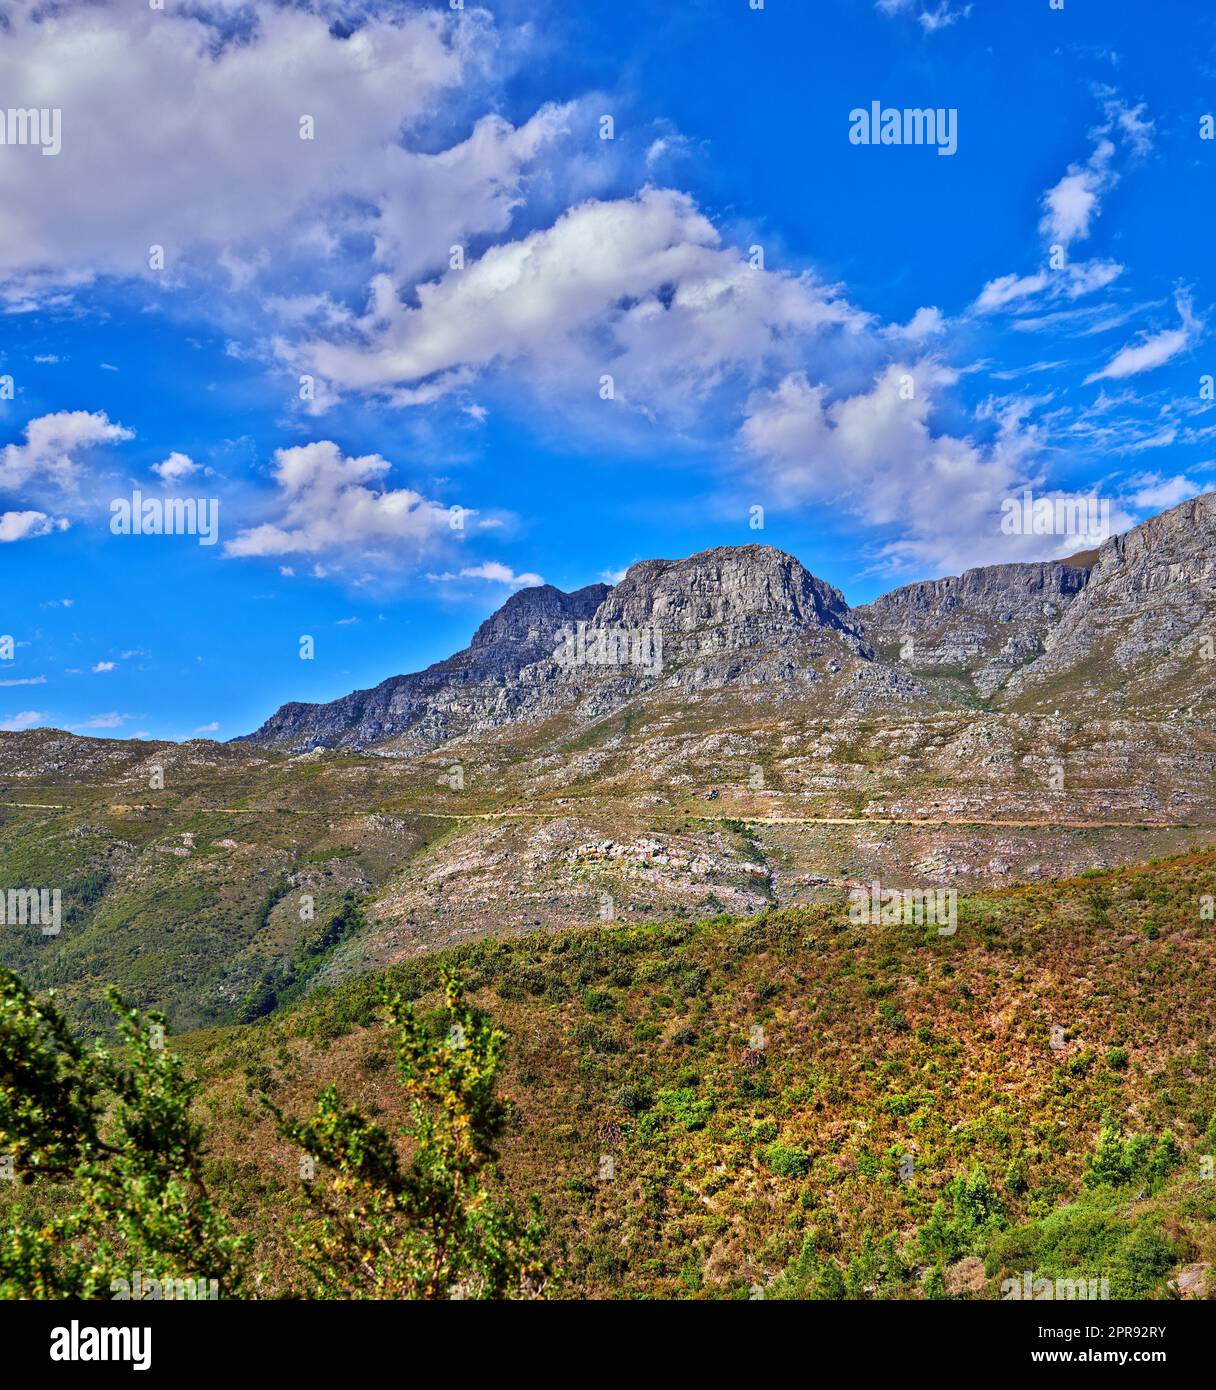 Belle montagne dans la paisible terre rocheuse lors d'une journée ensoleillée au Cap. Terre vibrante avec des buissons verts luxuriants et des plantes qui grandissent avec harmonie dans la nature. Vue reposante et apaisante sur l'Afrique du Sud Banque D'Images